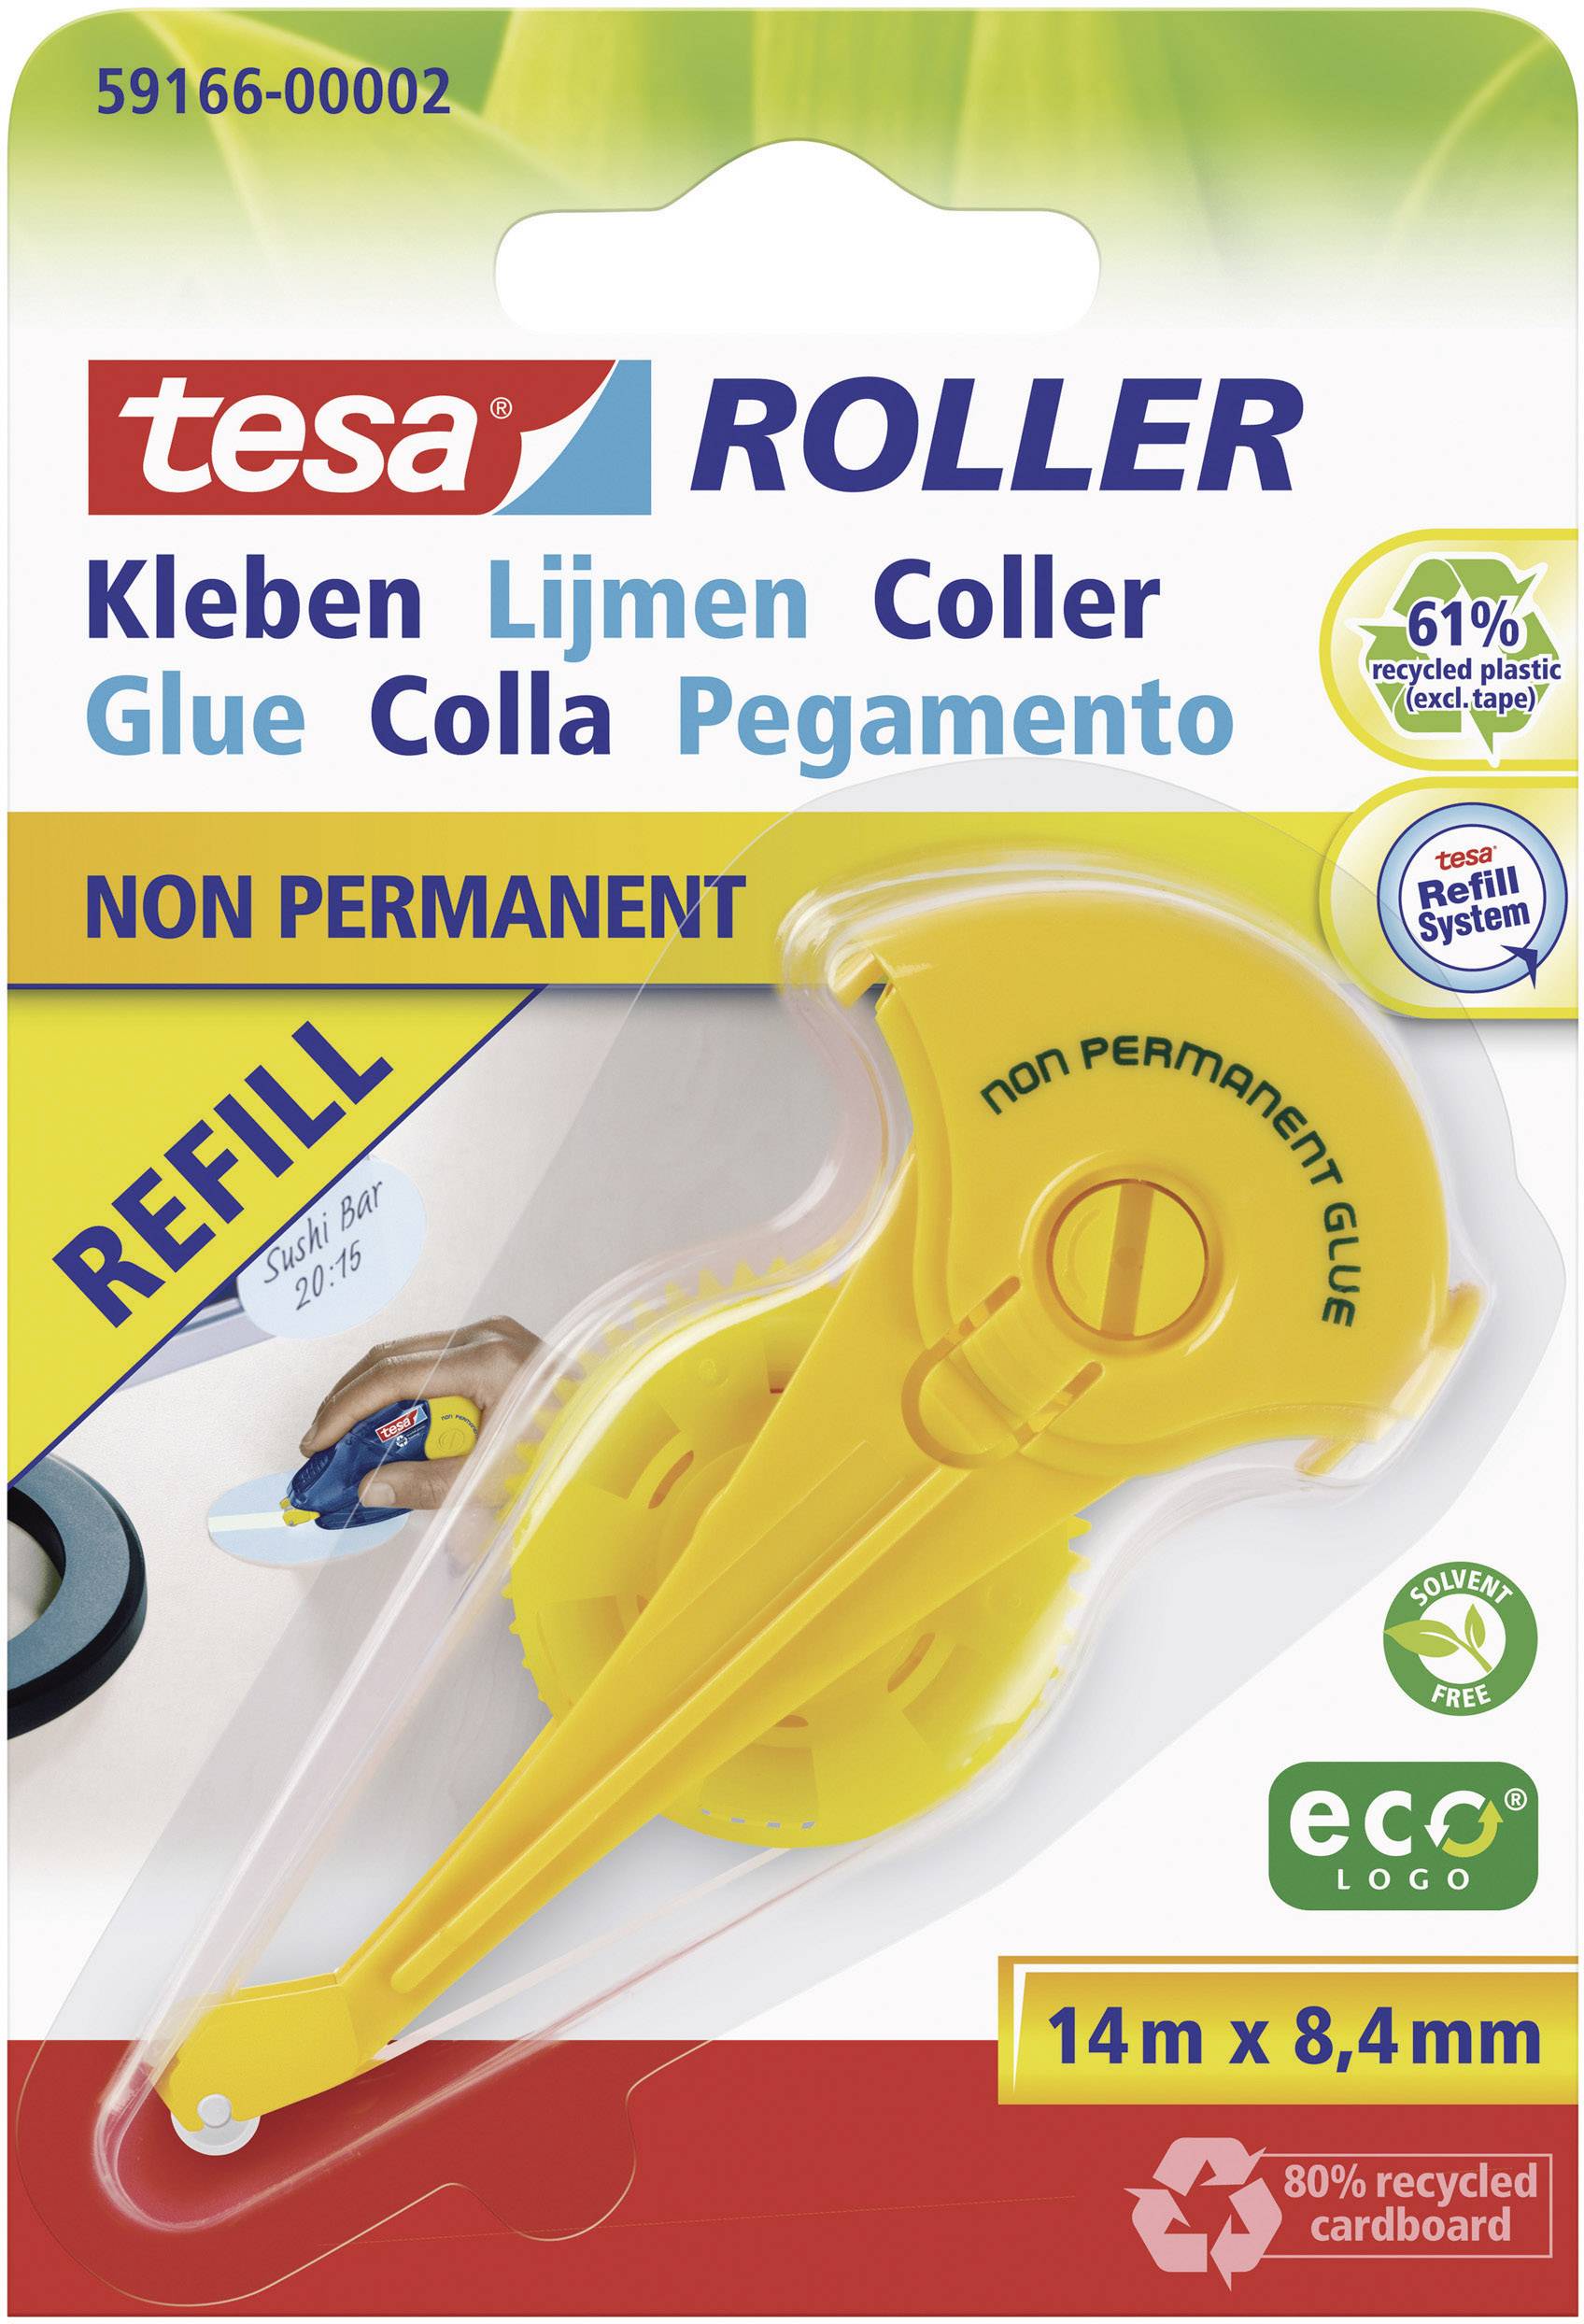 Tesa Roller Non Permanent Gluing Ecologo Refill